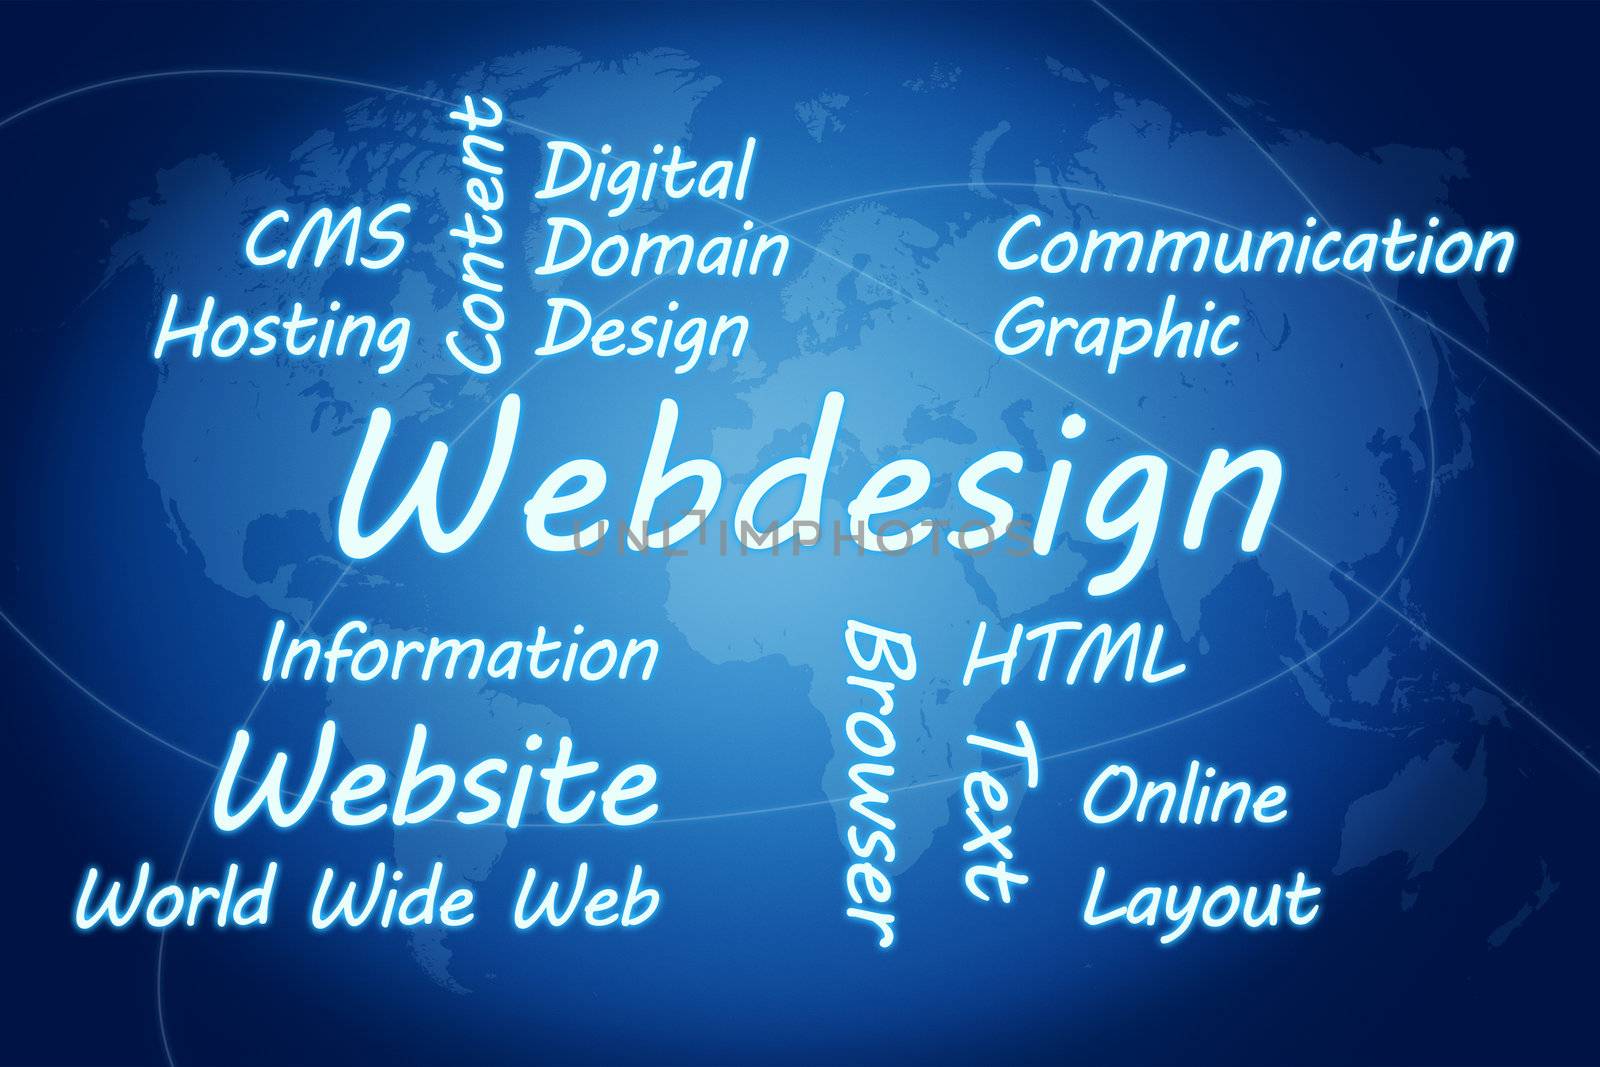 Webdesign Concept by Mazirama